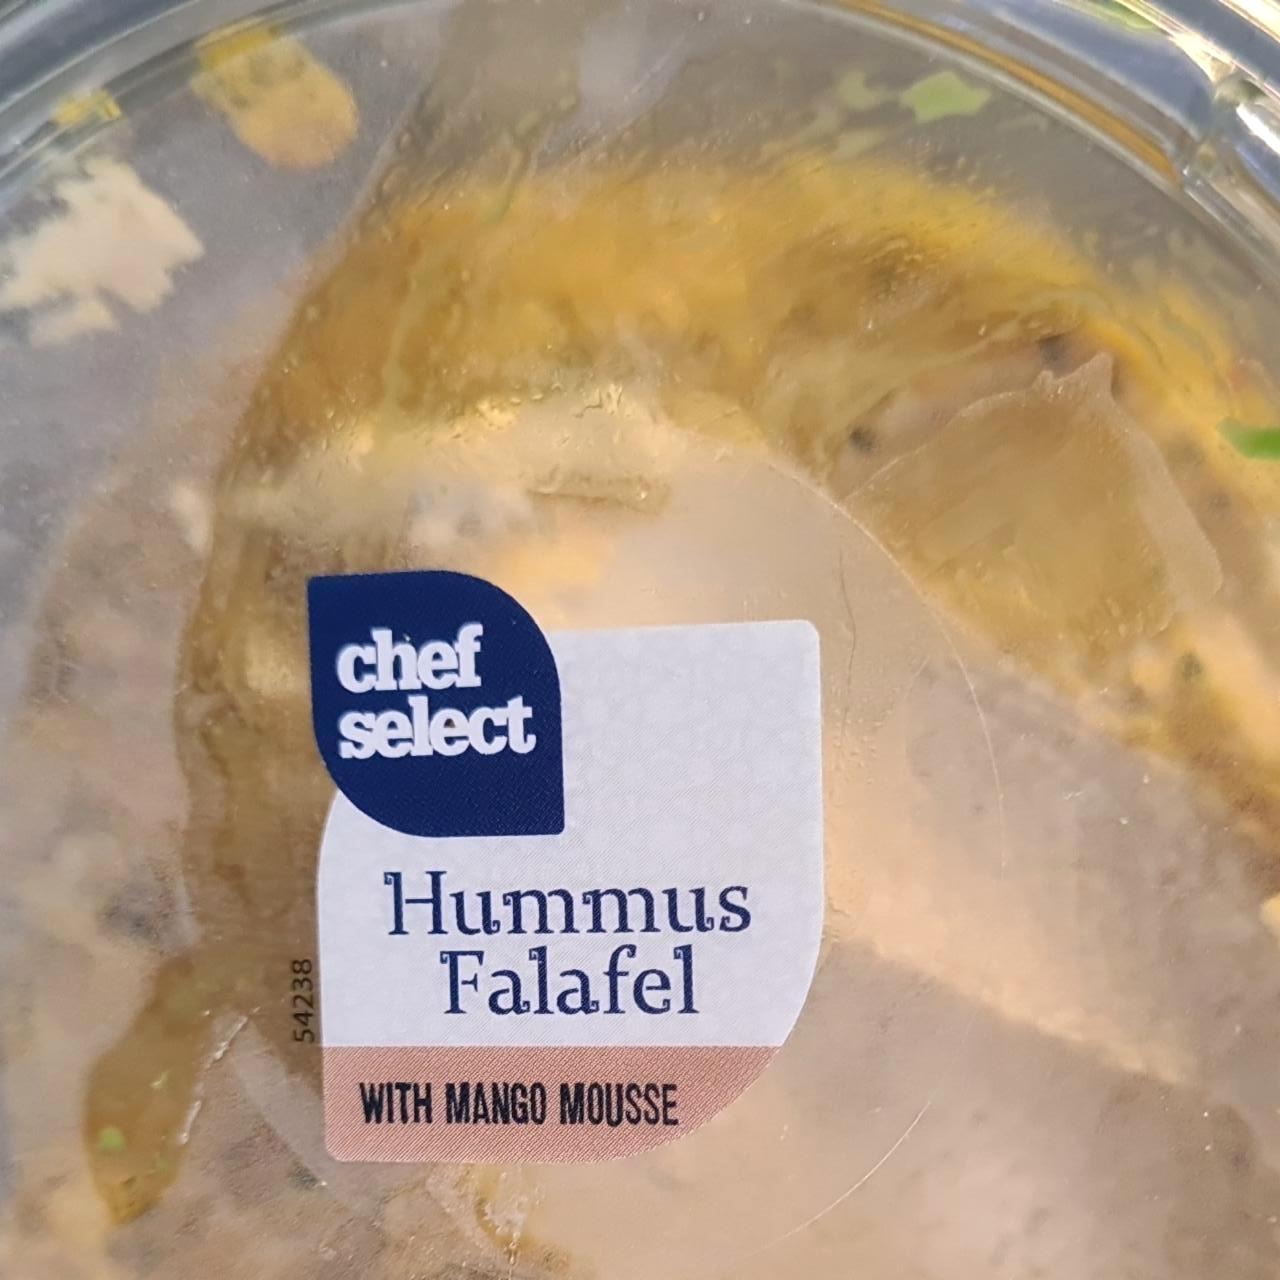 Képek - Hummus falafel with mango mousse Chef select